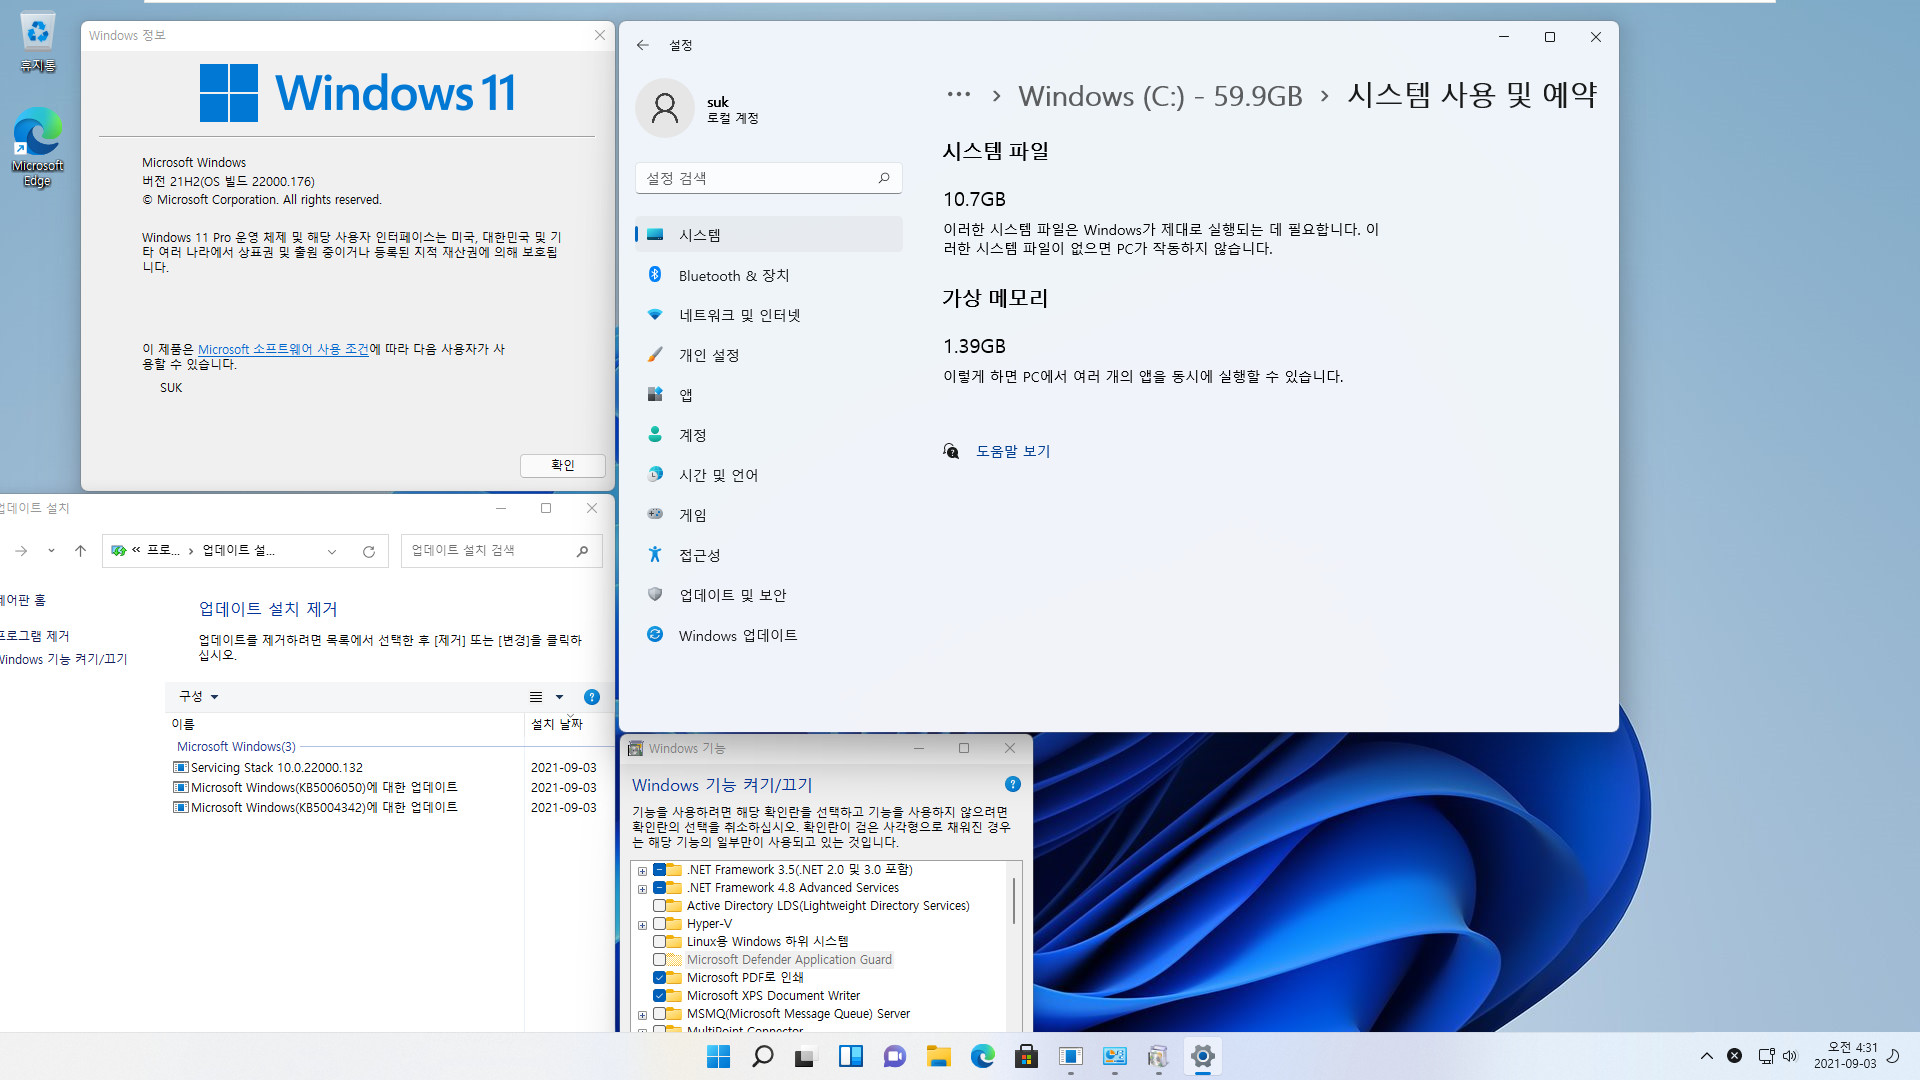 Windows 11 인사이더 프리뷰 - 버전 21H2 (OS 빌드 22000.176) 나왔네요 - 베타 채널 2021-09-03_043112.jpg